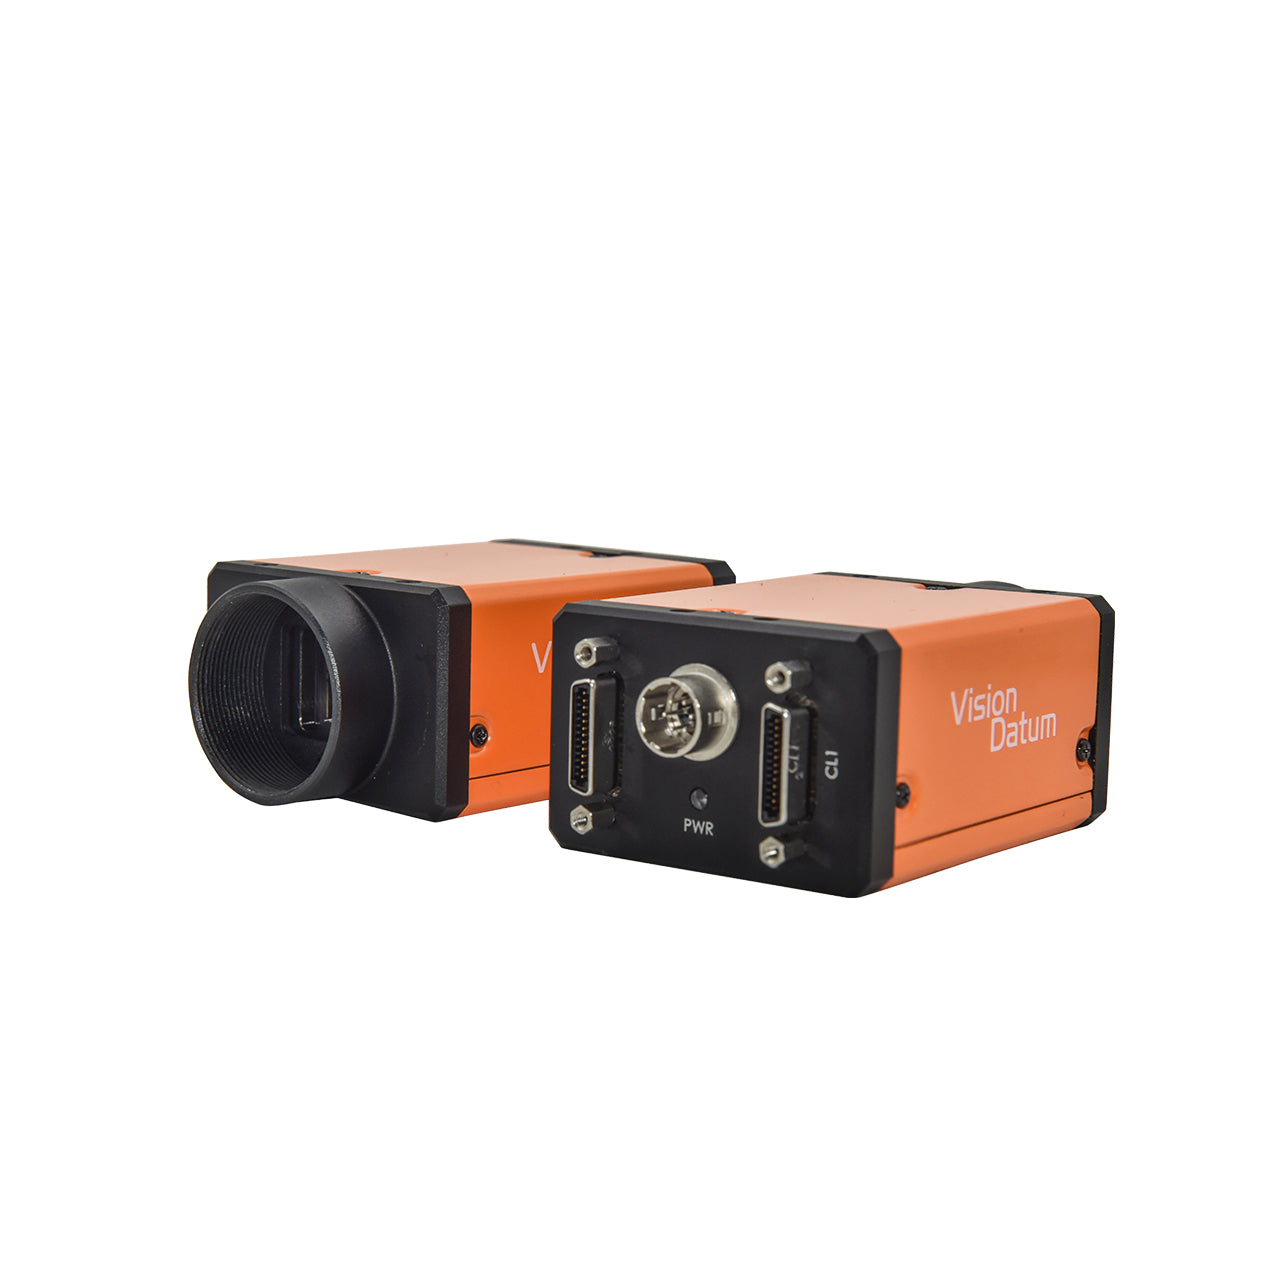 25-мегапиксельная камера GMAX0505, 30 кадров в секунду, камера CameraLink с глобальным сканированием области затвора